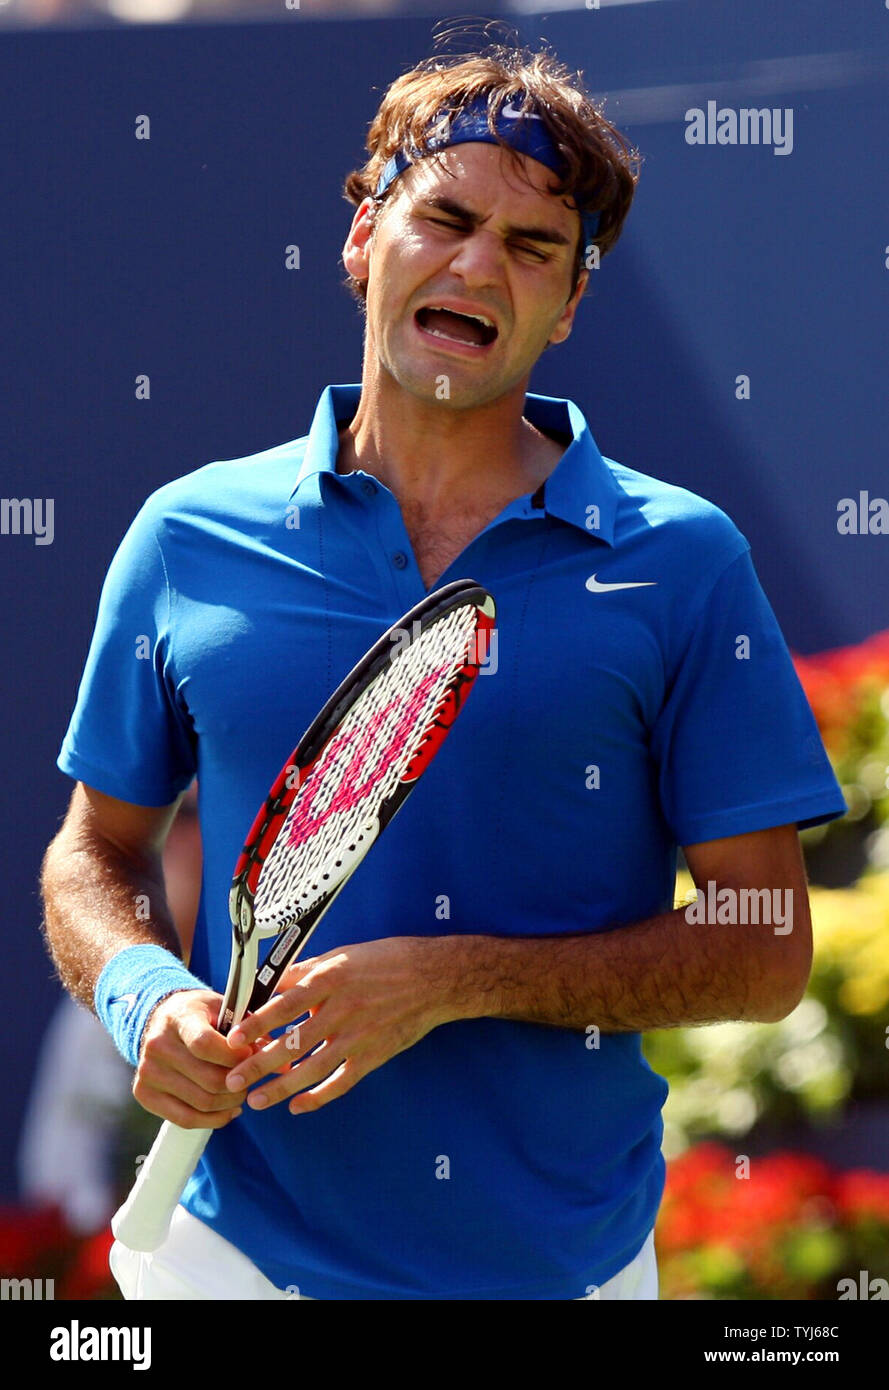 Roger Federer réagit après avoir perdu un point dans son premier match contre les États-Unis à Scoville Jenkins ouvrir à New York City le 27 août 2007. (Photo d'UPI/John Angelillo) Banque D'Images